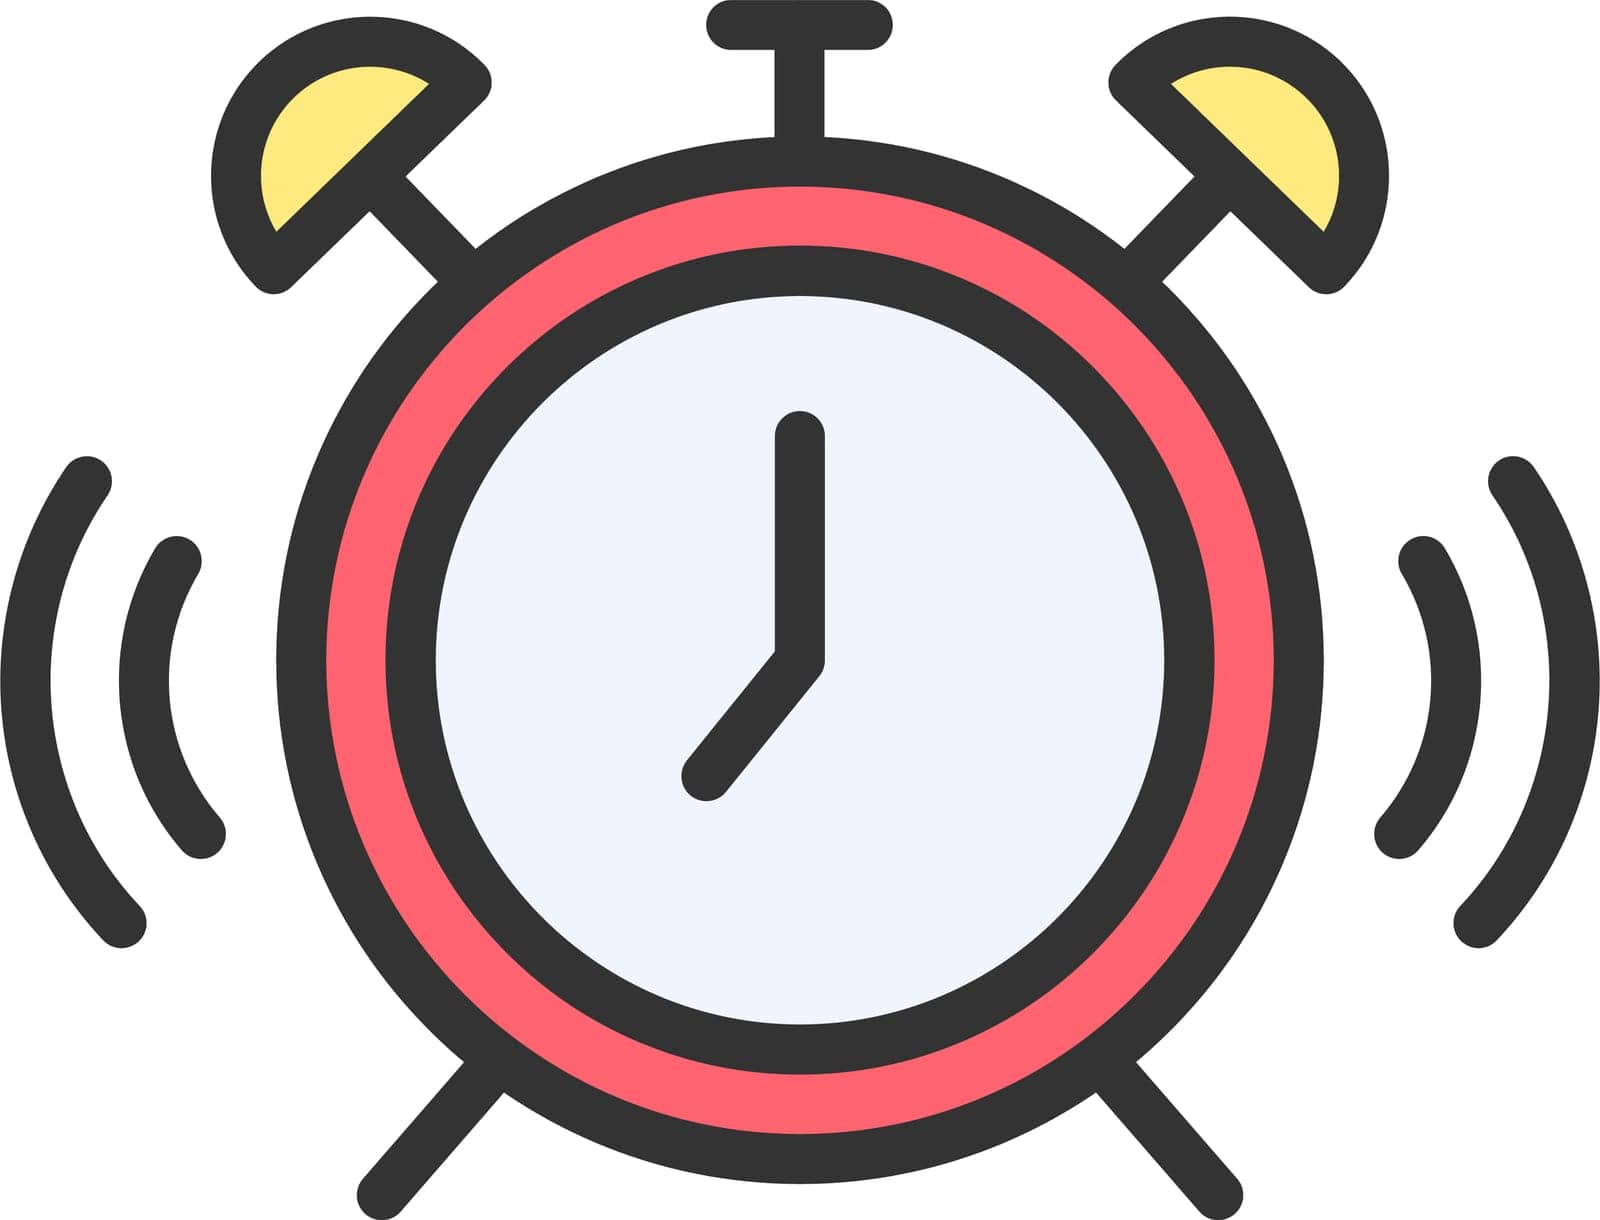 Alarm Clock Icon Image. by ICONBUNNY